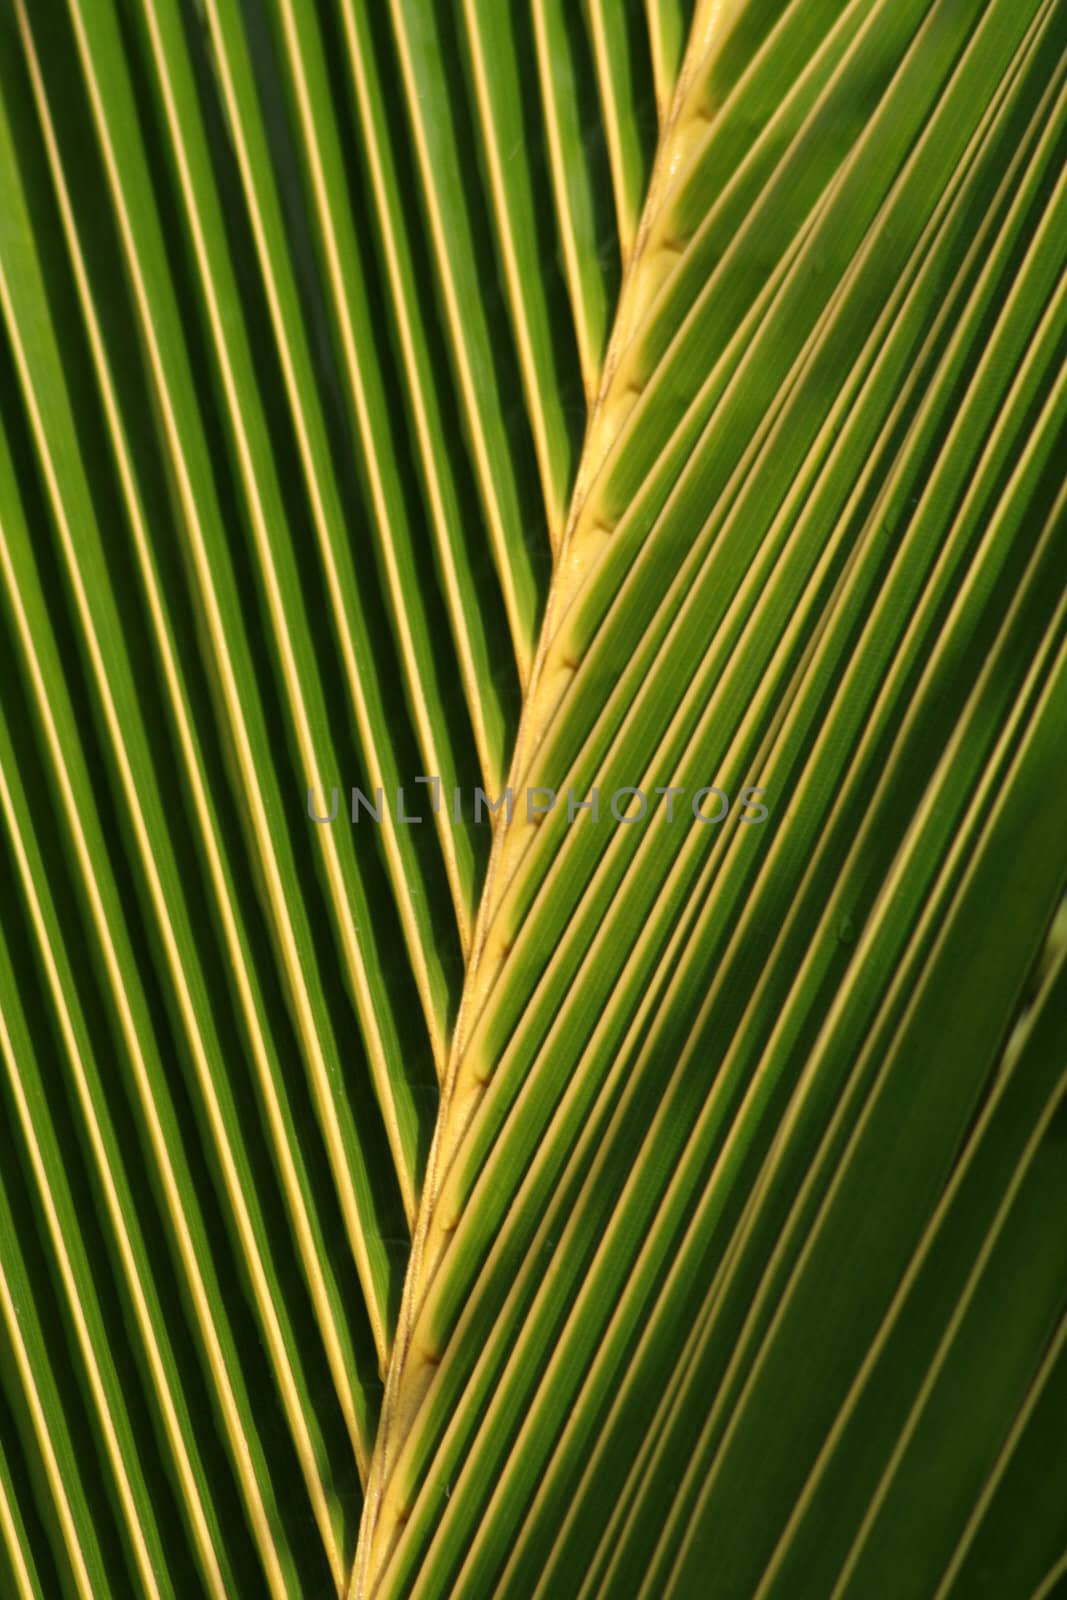 A closeup of a palm tree leaf.